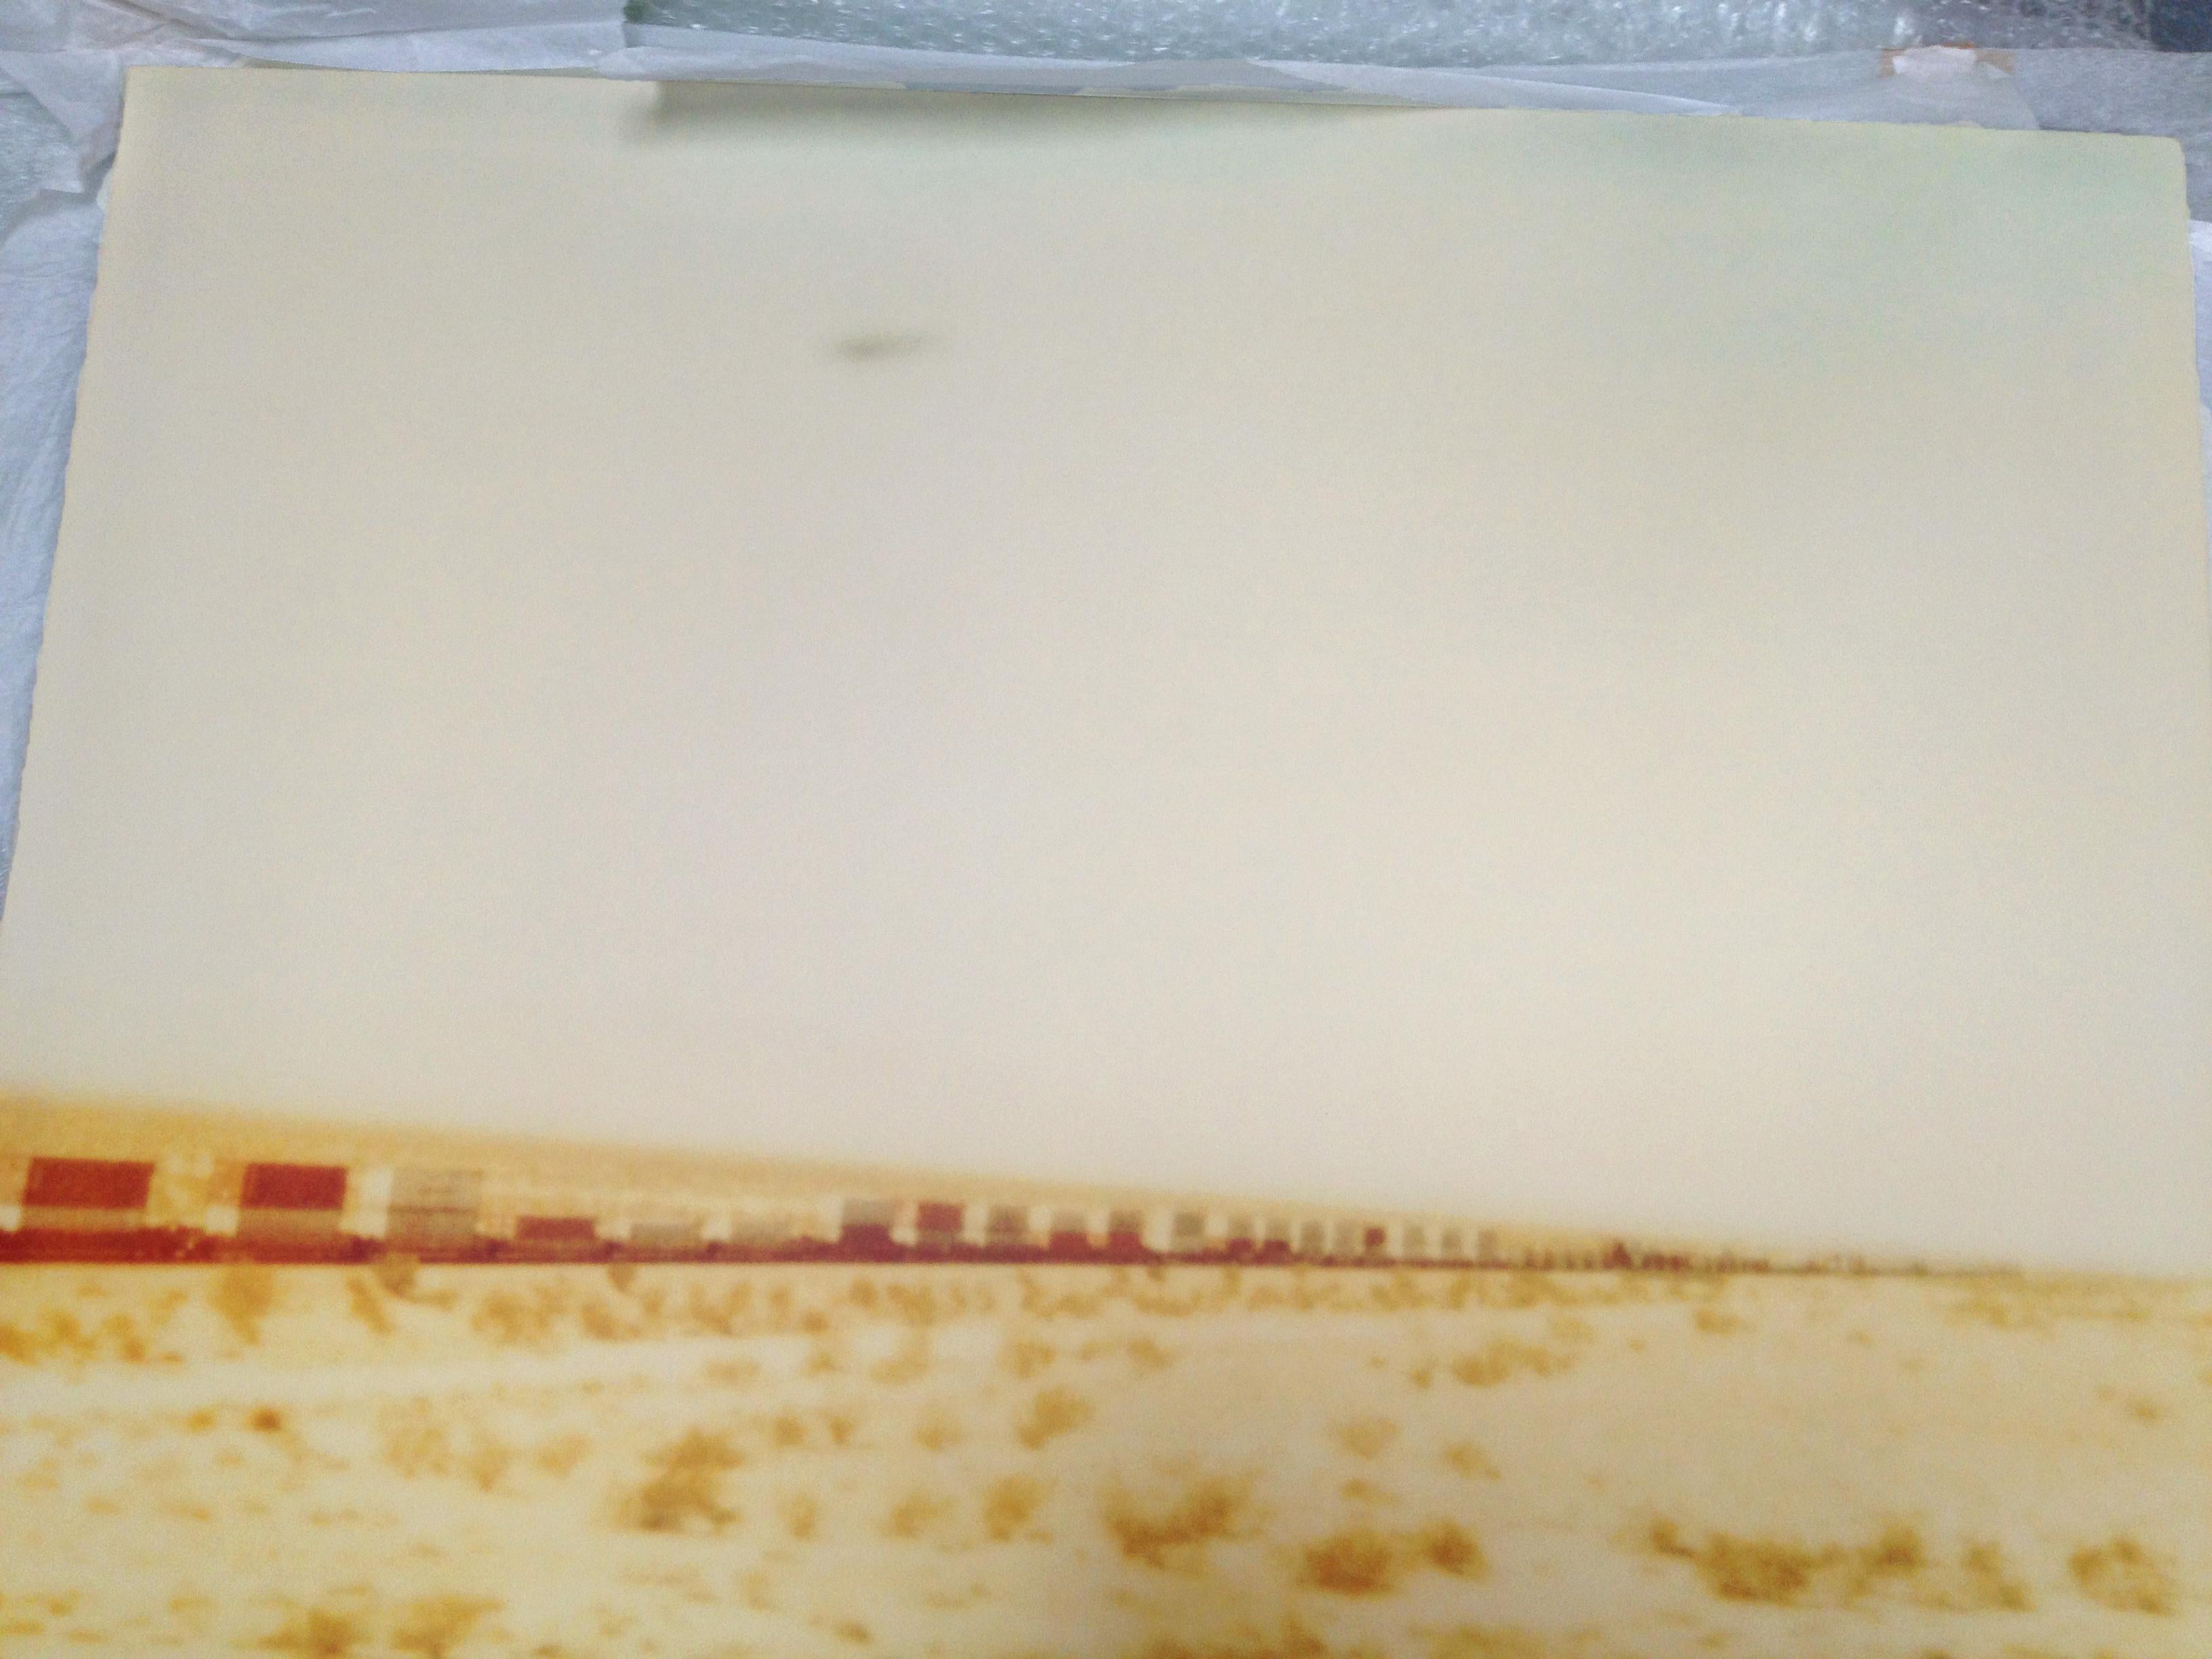 Croix de train Plain (Wastelands) - impression analogique à la main, montée - Polaroid, couleur - Contemporain Photograph par Stefanie Schneider